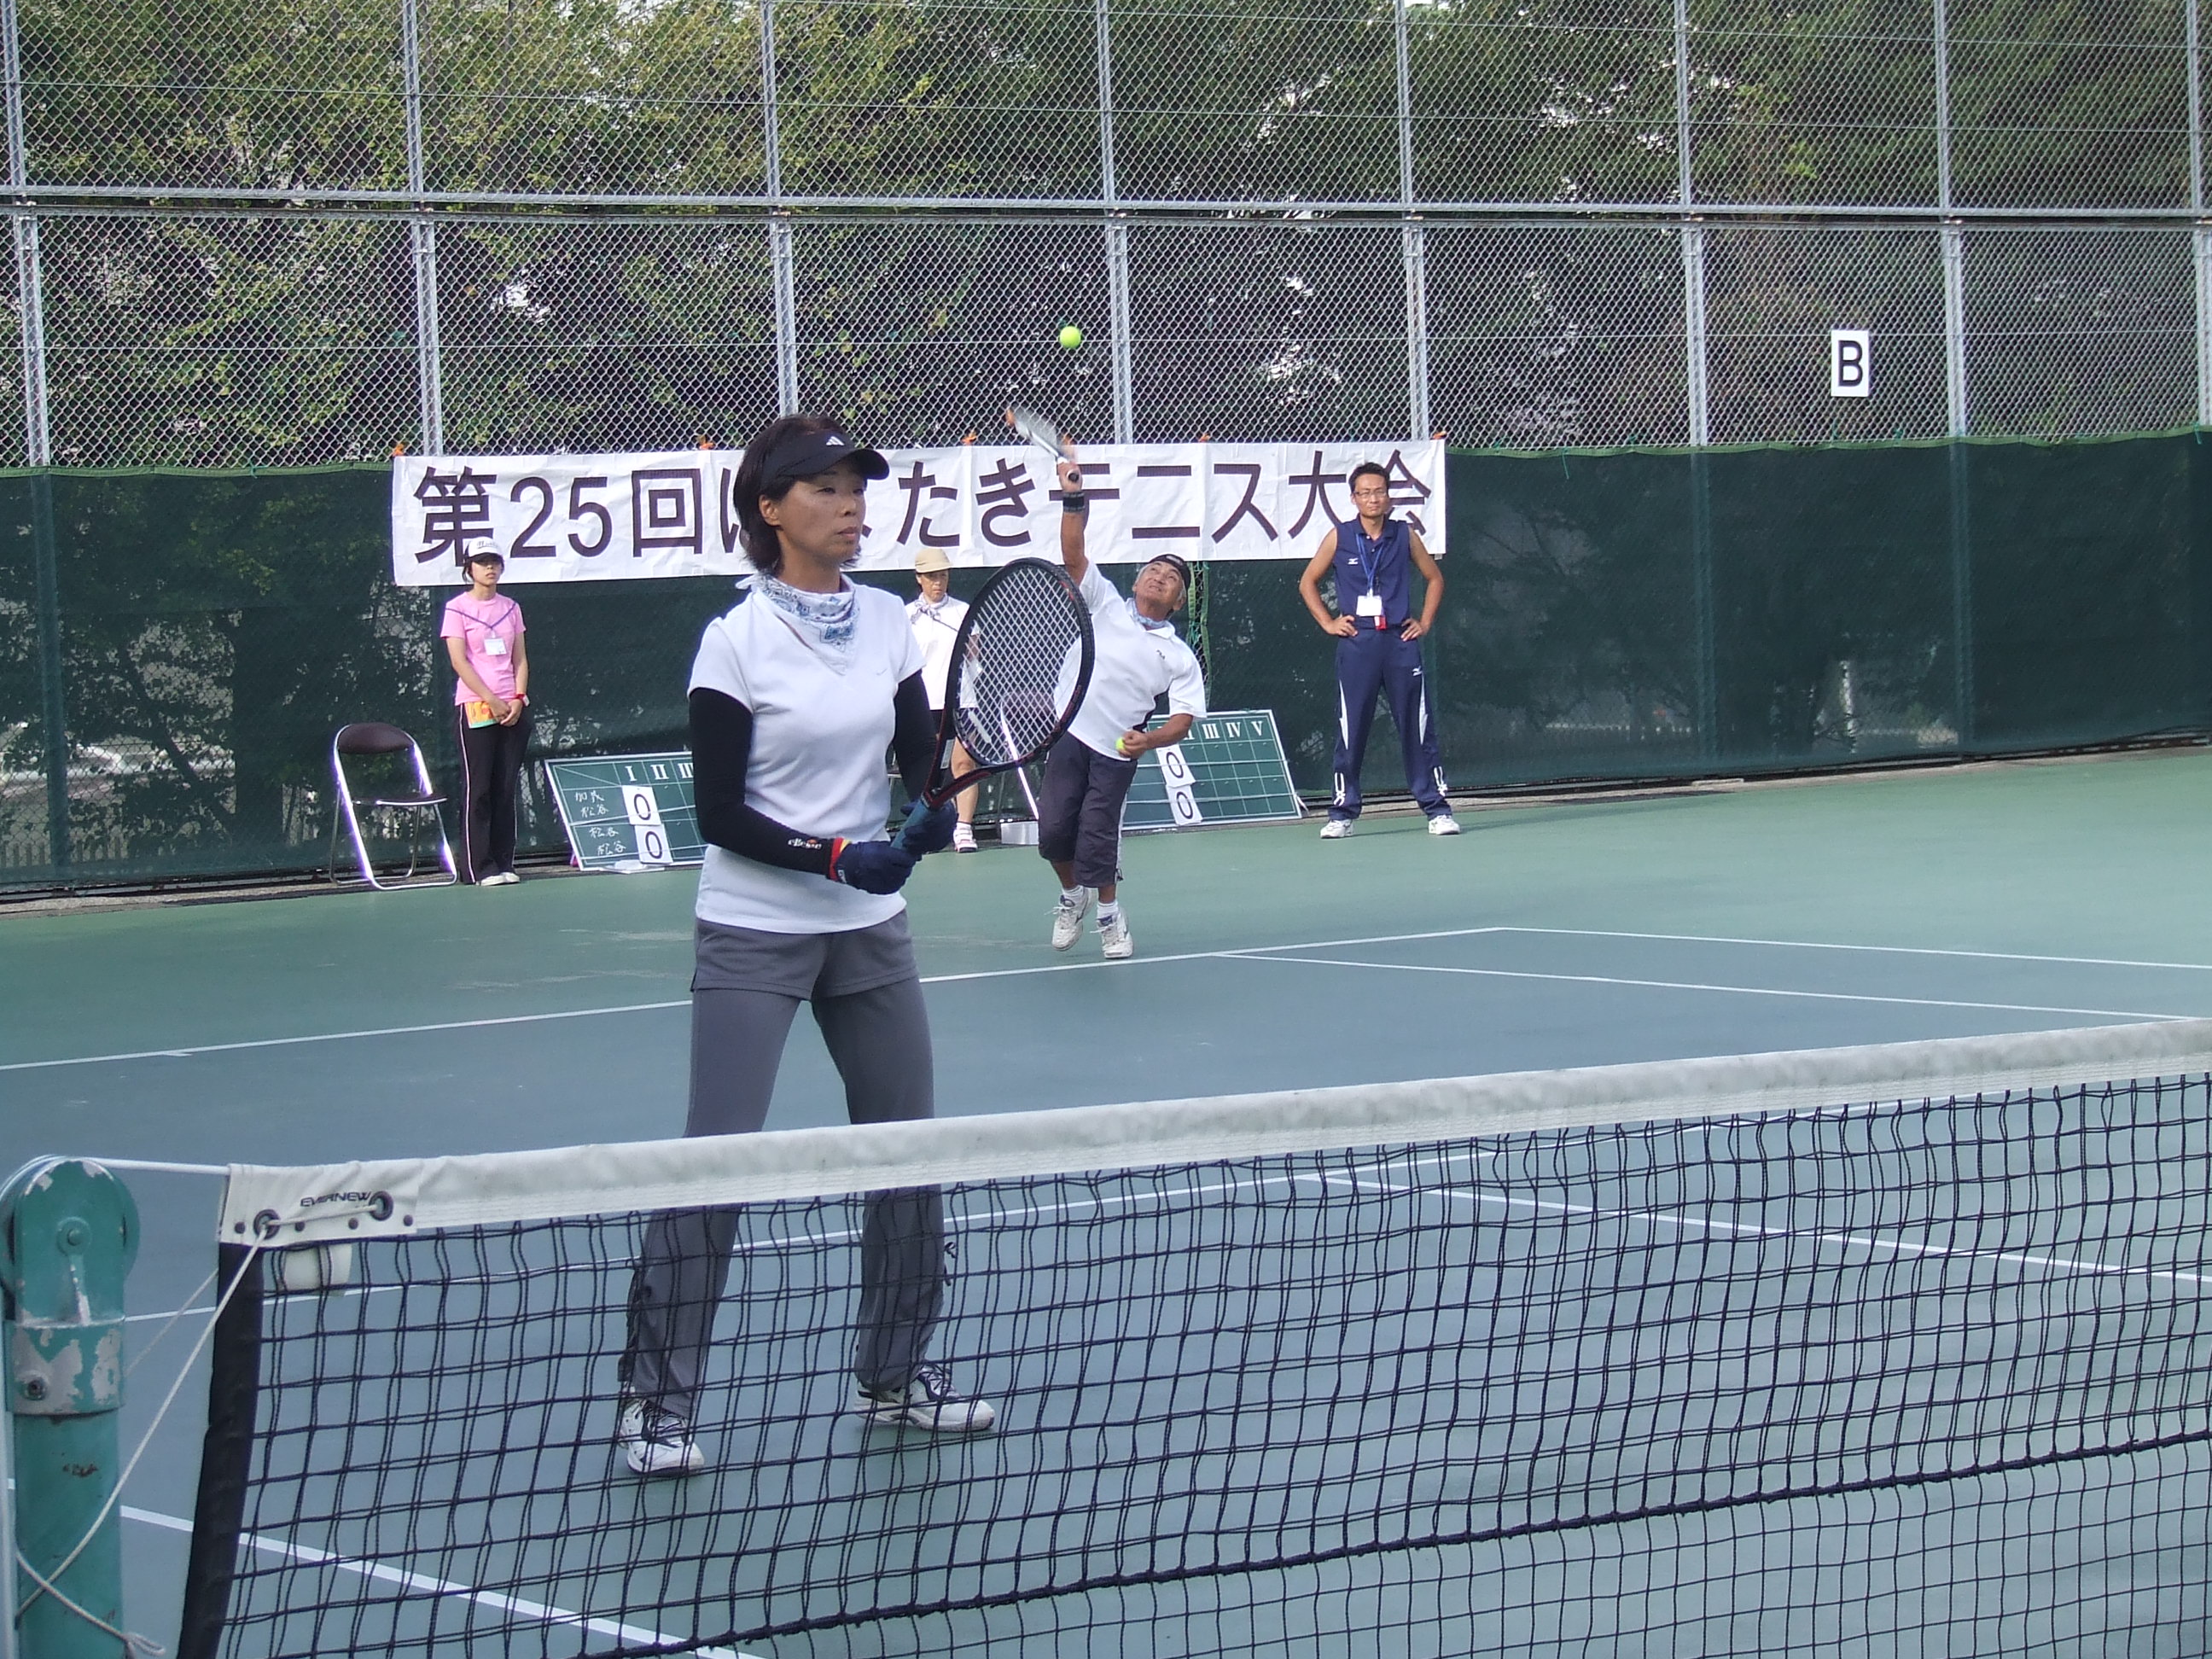 habatakitenisu1 - 第25回はばたきテニス大会